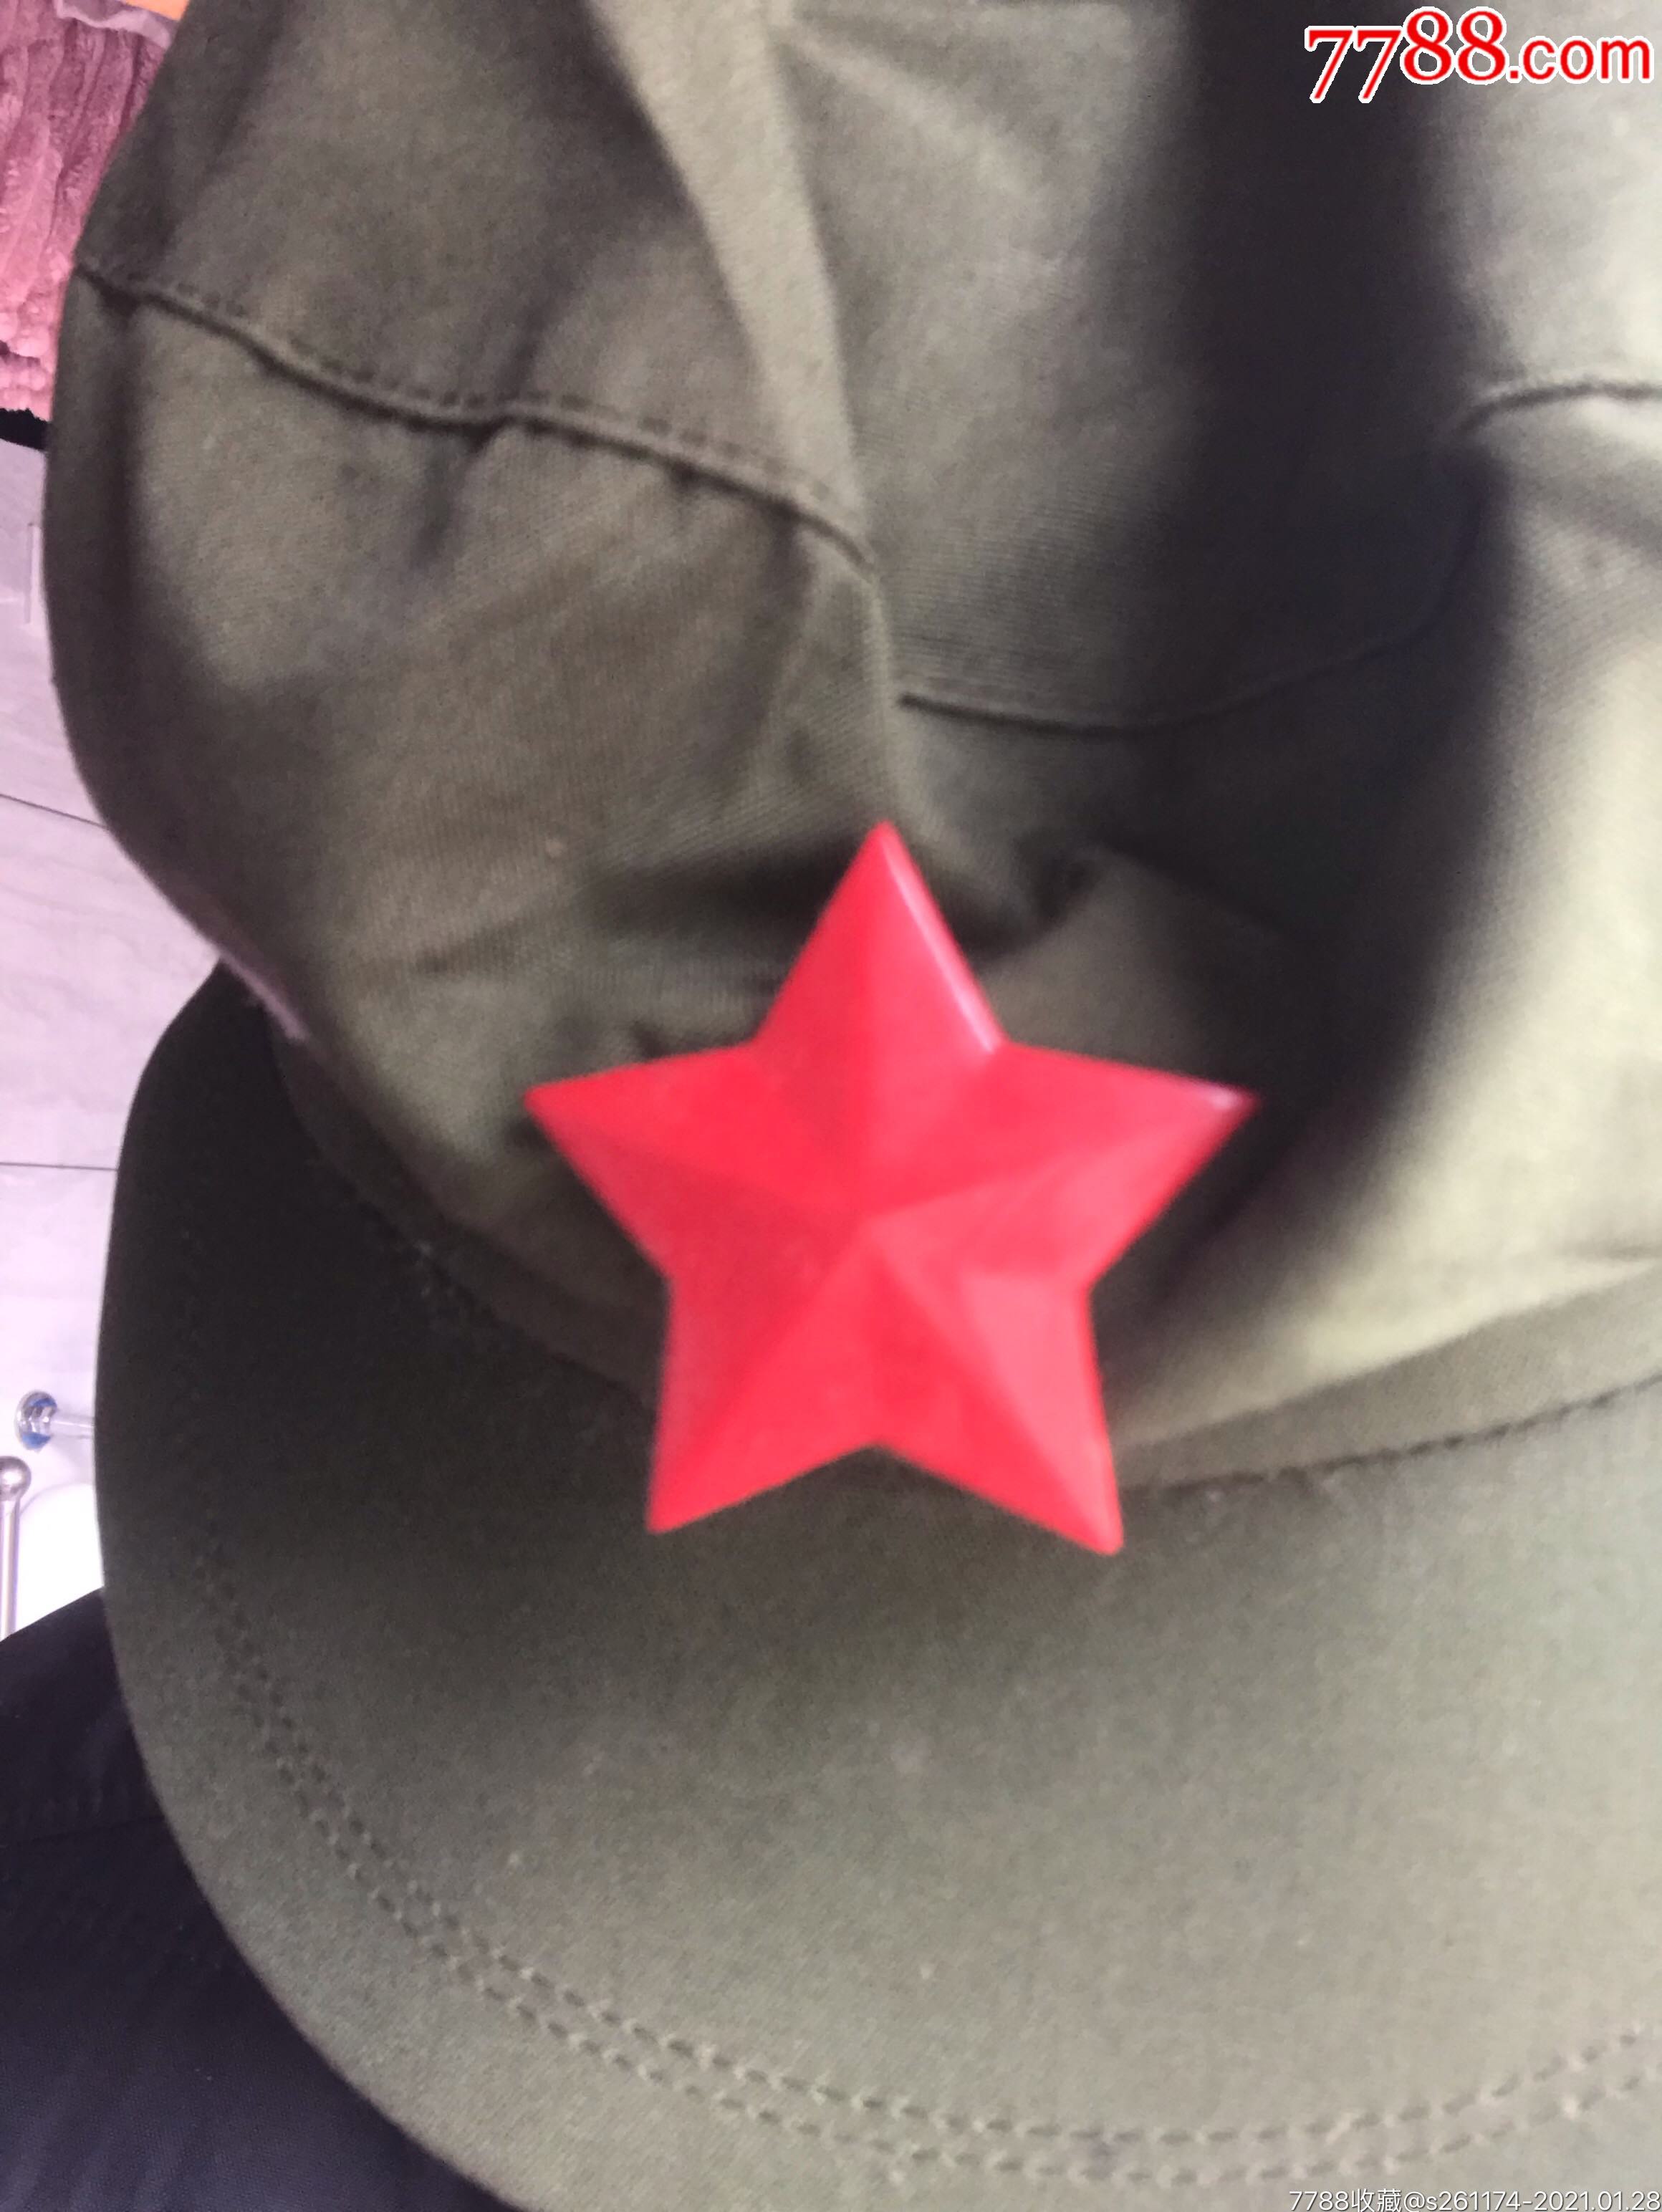 解放军帽-价格:30.0000元-au25441893-帽子 -加价